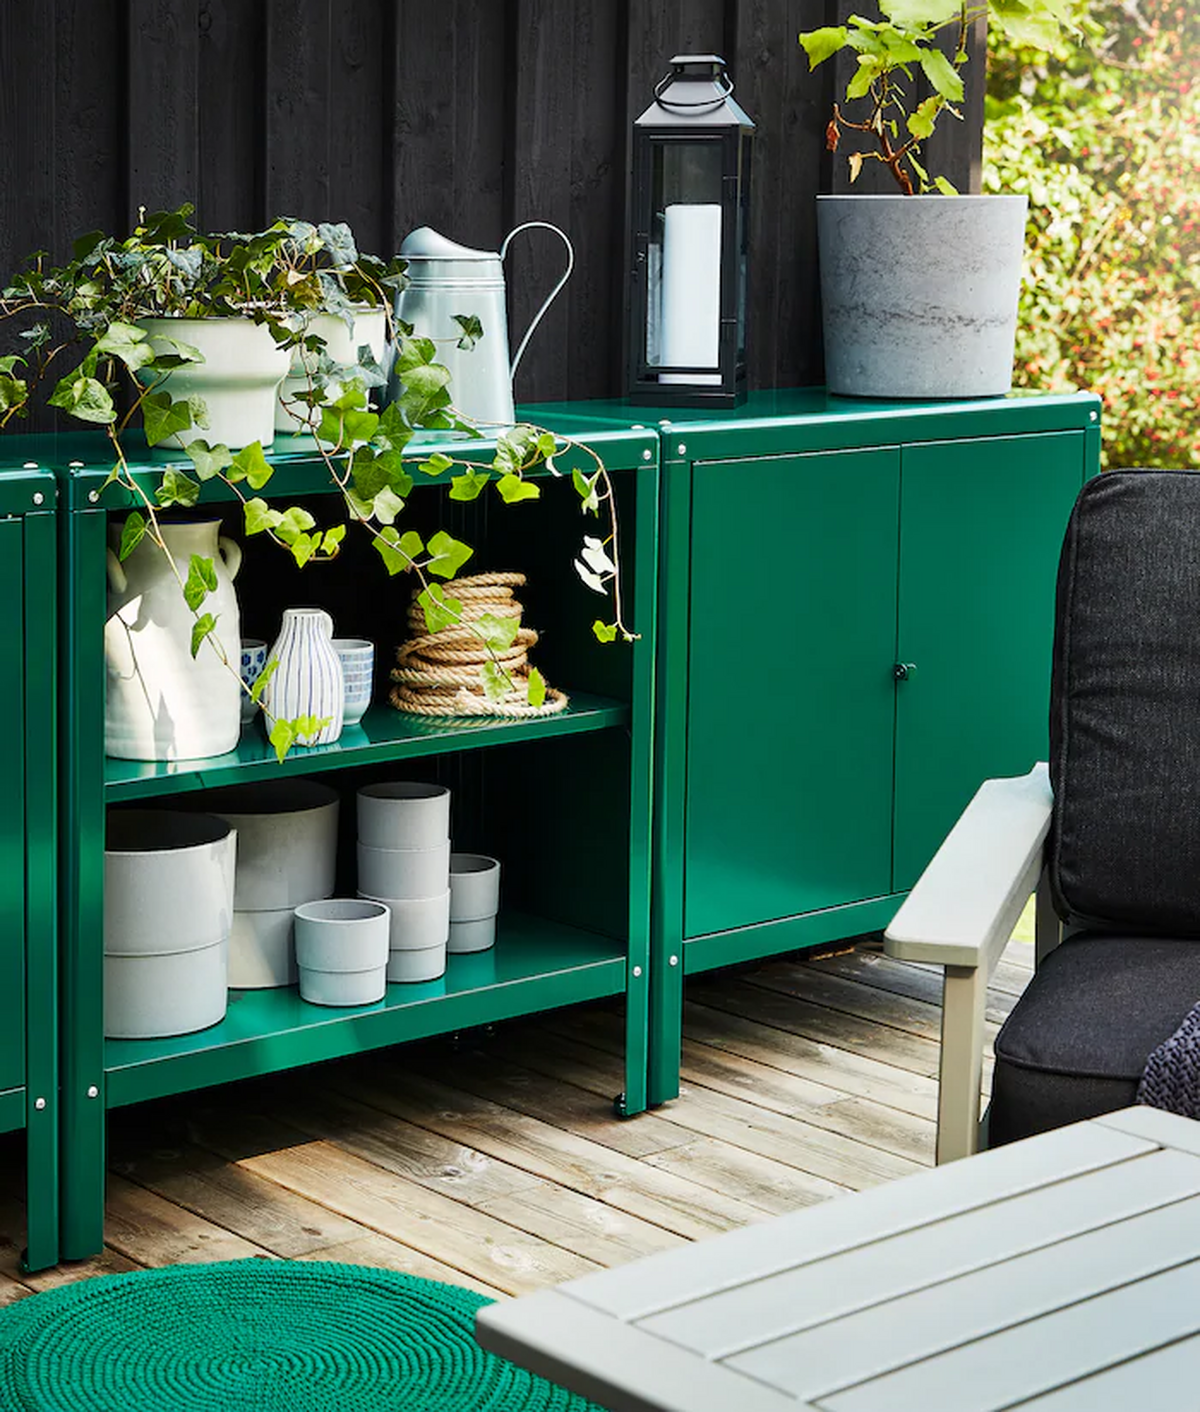 Un mueble para la terraza en color verde con detalles en blanco y acompañado de macetas.